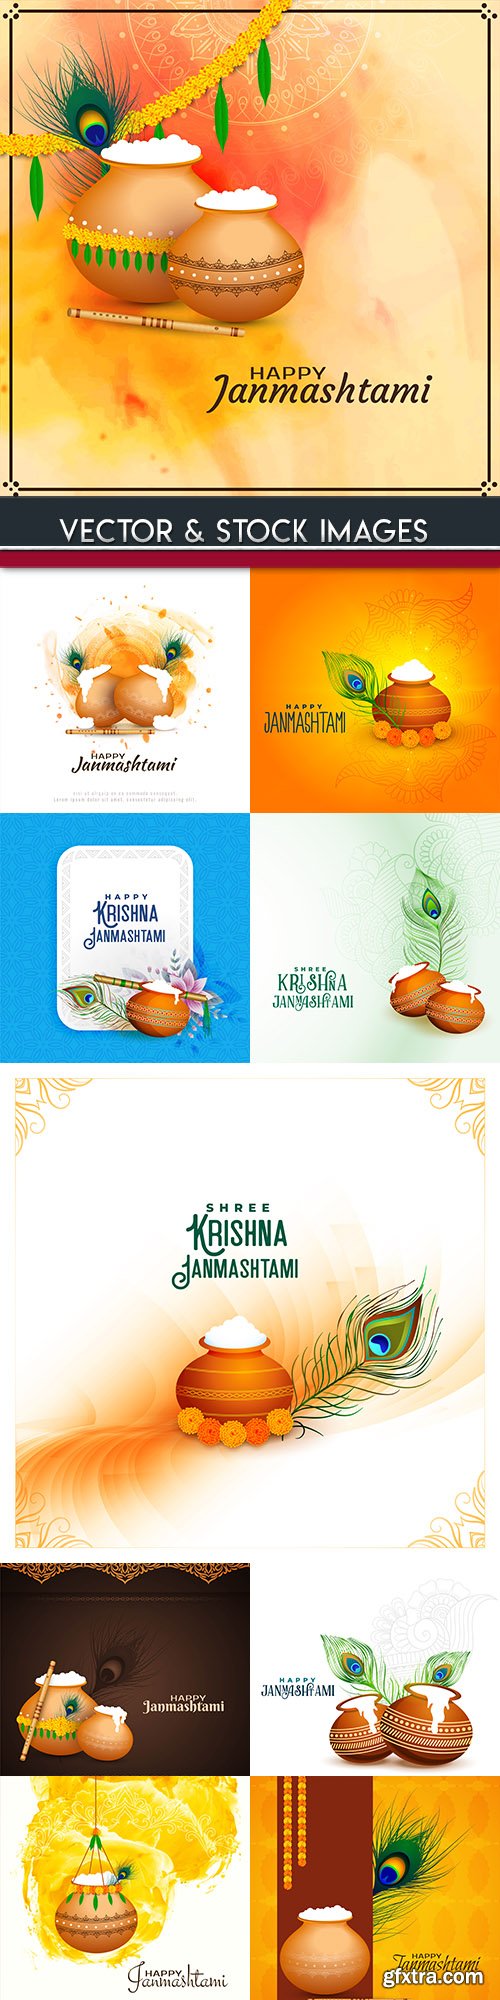 Janmashtami Indian holiday background design